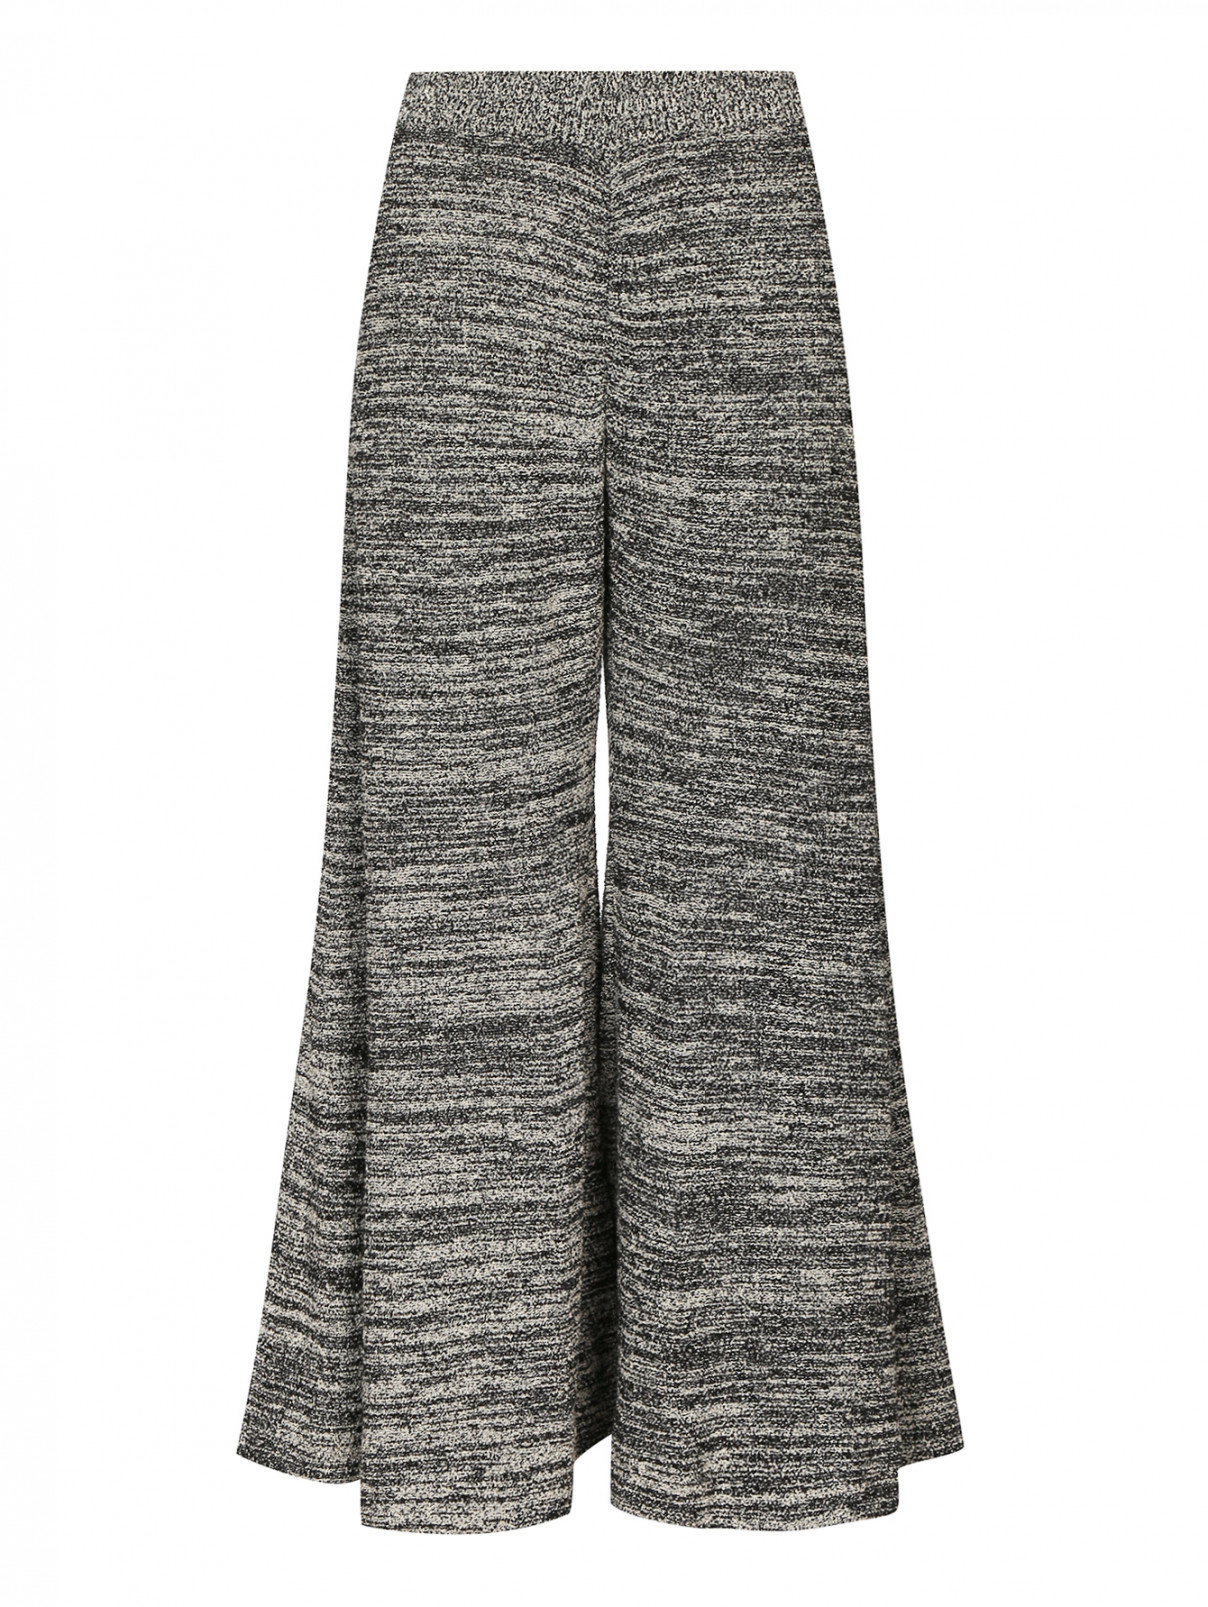 Трикотажные брюки-клеш из хлопка и шерсти Paul Smith  –  Общий вид  – Цвет:  Серый